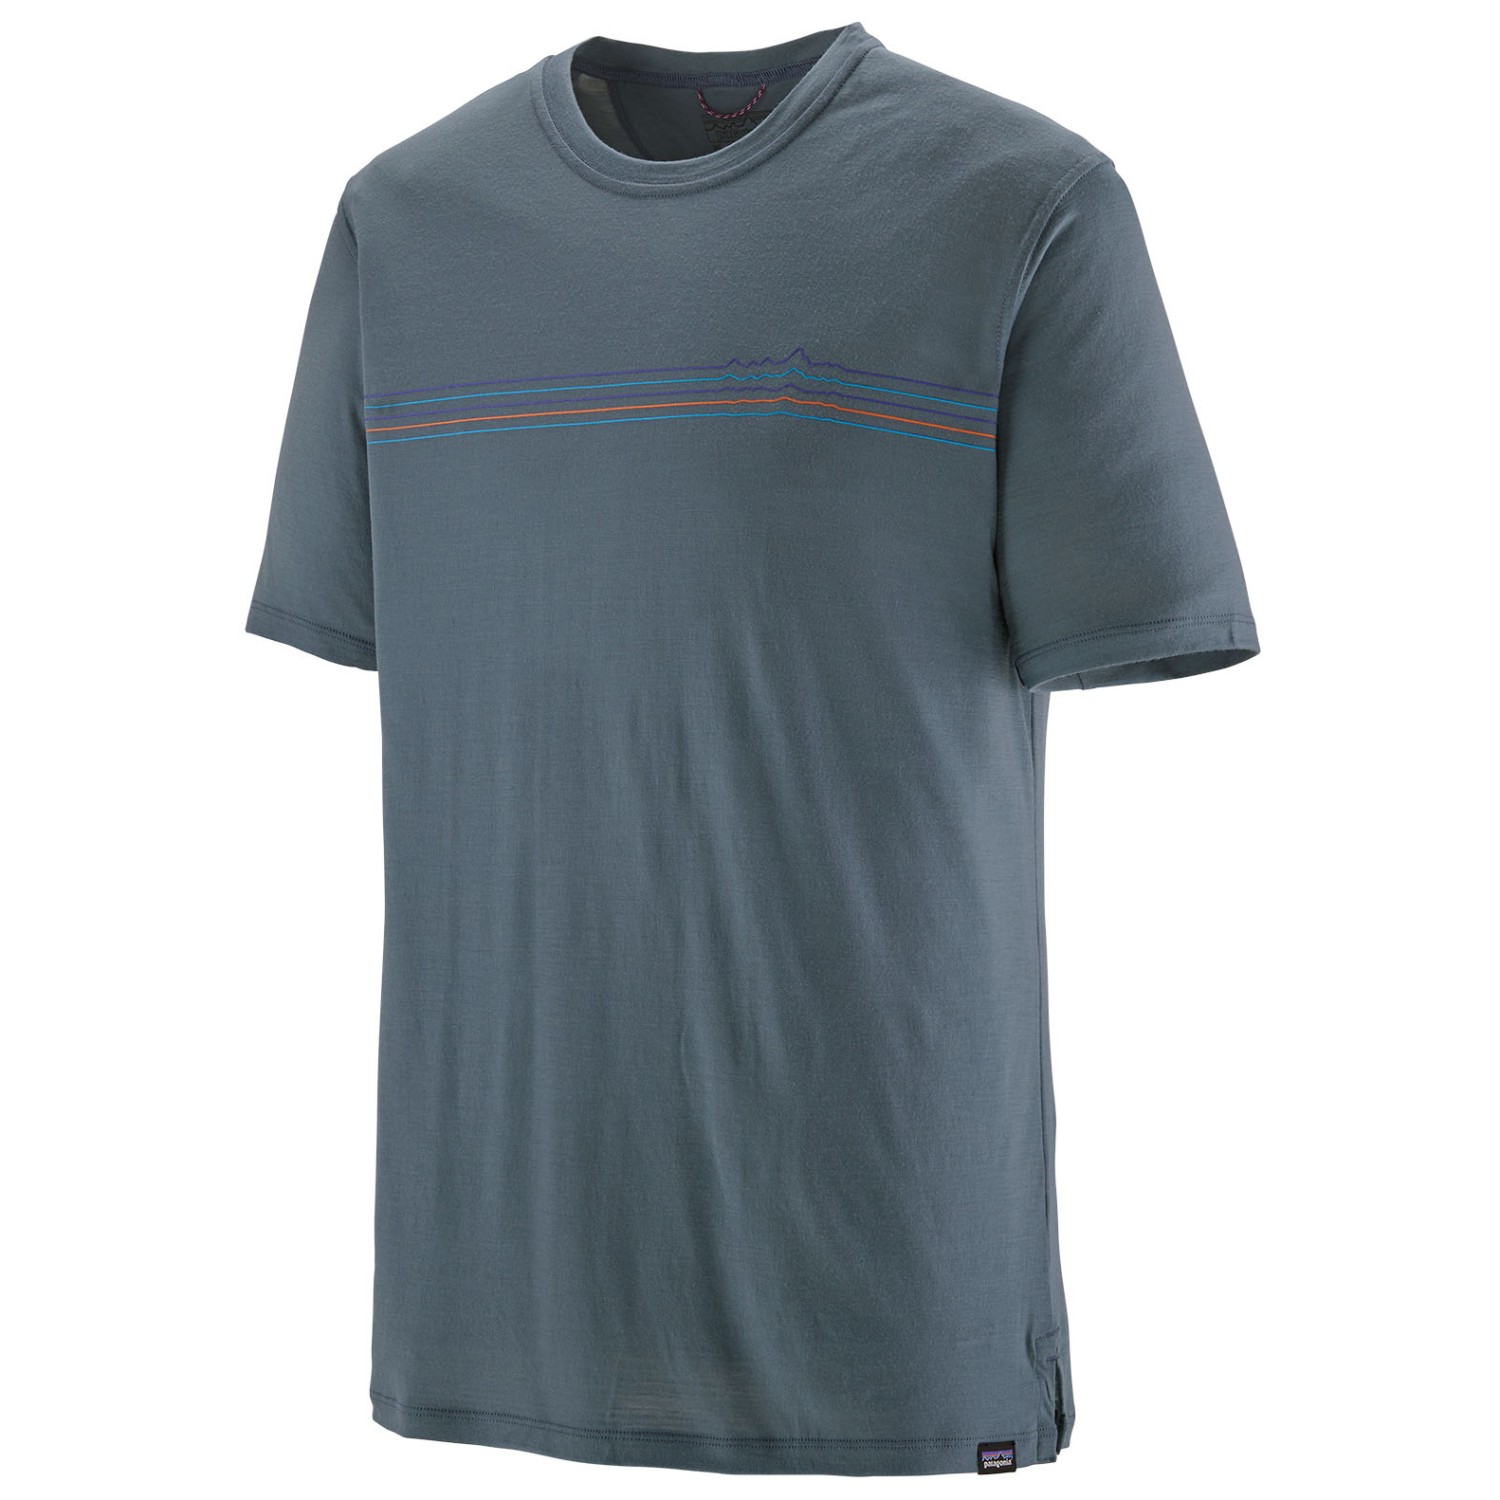 Рубашка из мериноса Patagonia Cap Cool Merino Graphic Shirt, цвет Fitz Roy Fader/Utility Blue